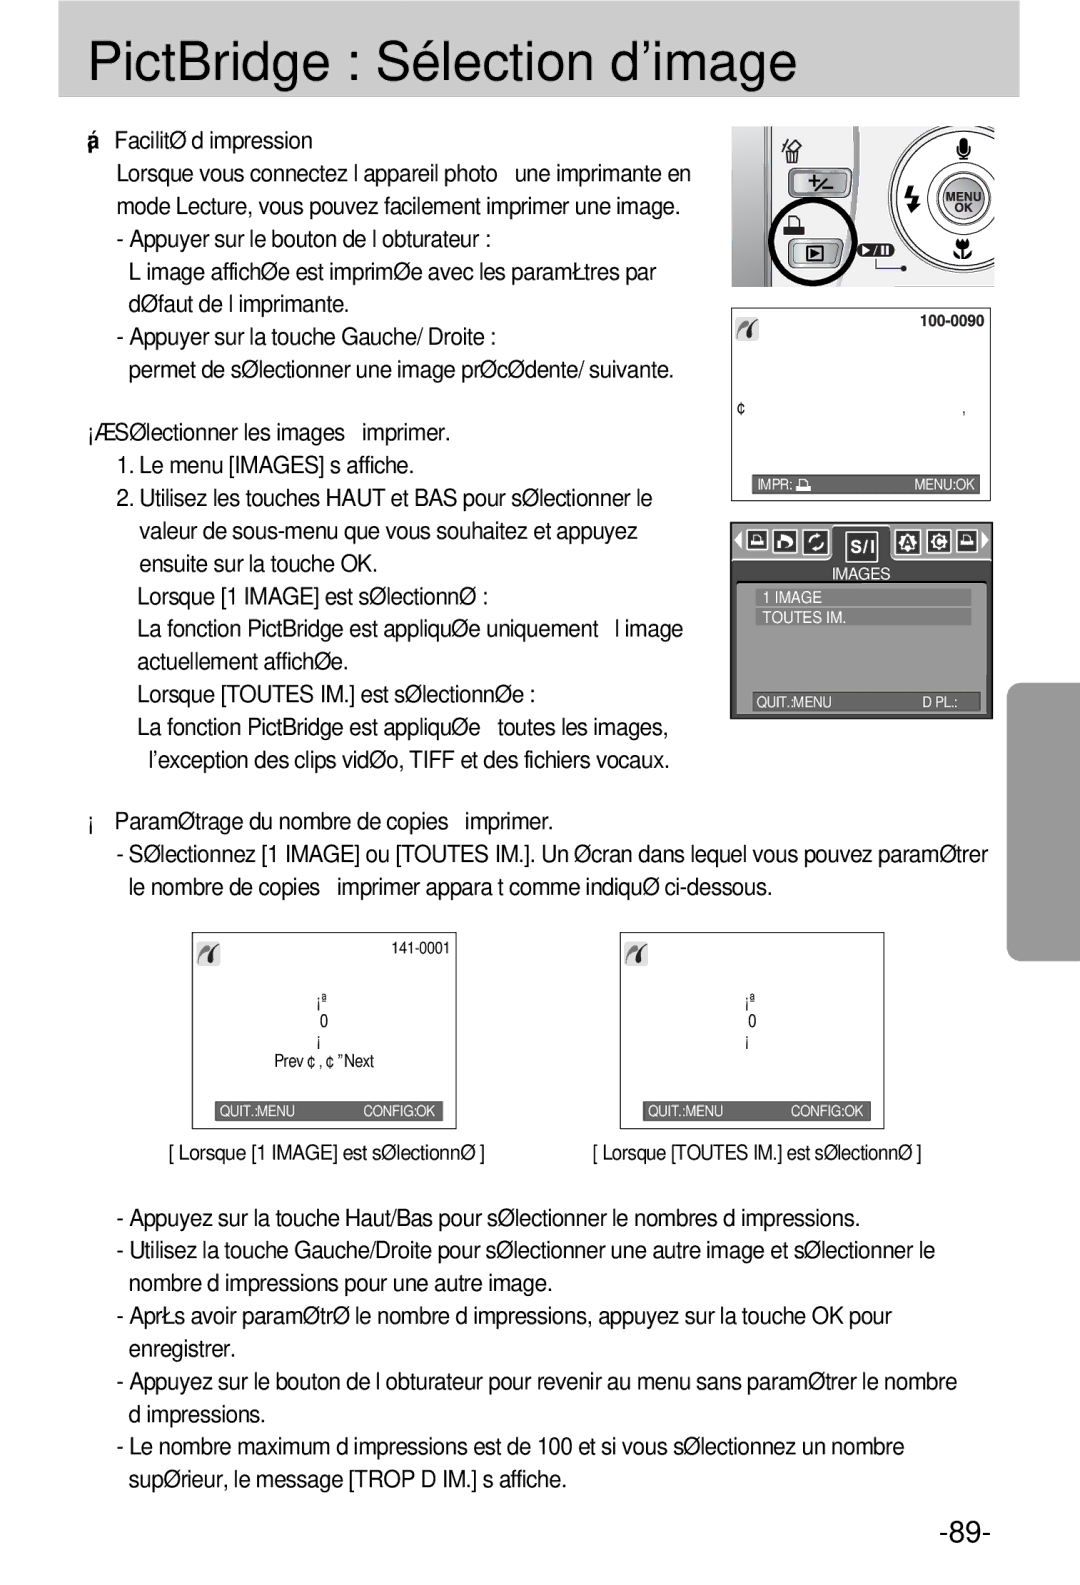 Samsung EC-V800ZSBA/FR manual PictBridge Sélection d’image, Facilité d’impression 